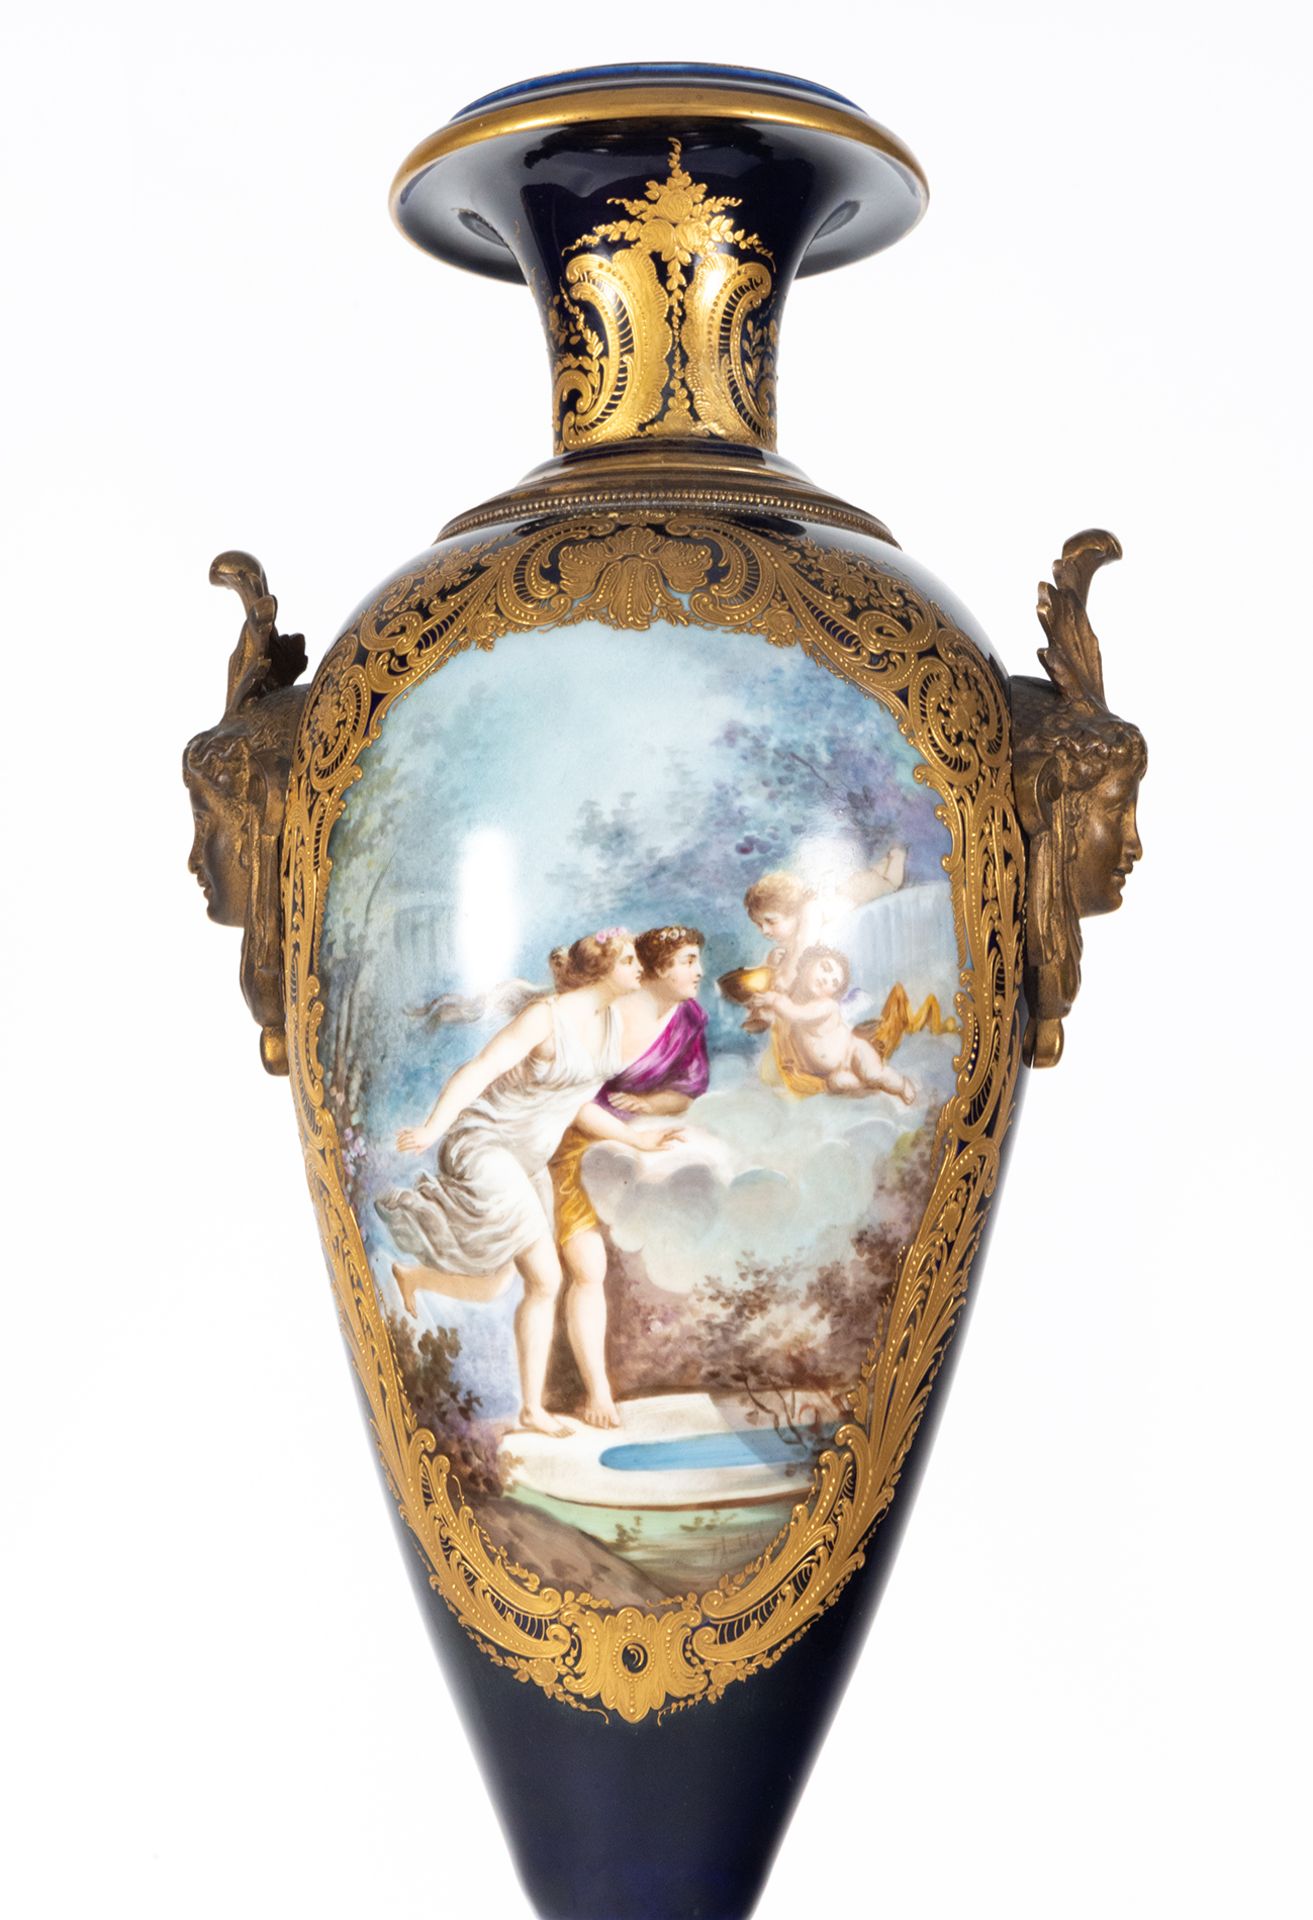 Pair of Svres Vases, 19th century French school - Image 8 of 15